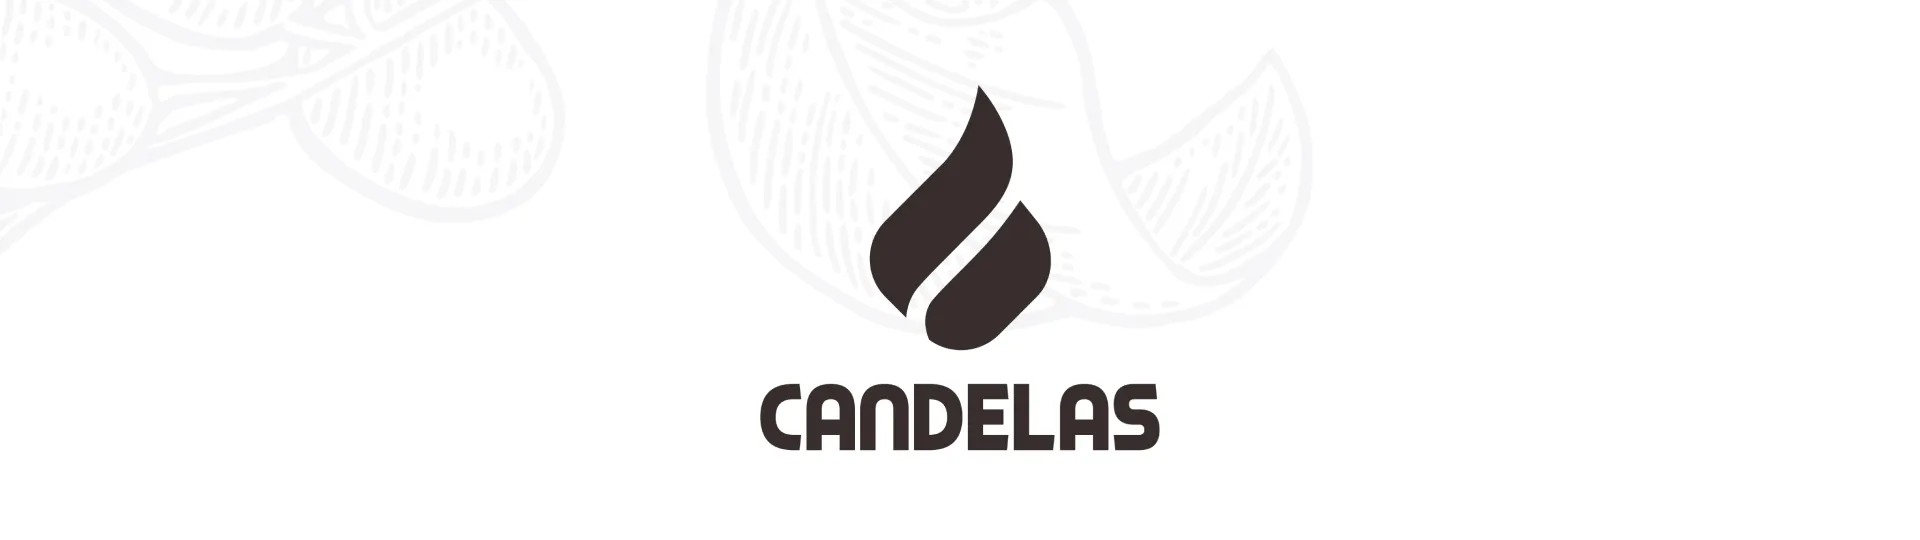 branding-cafes-candelas